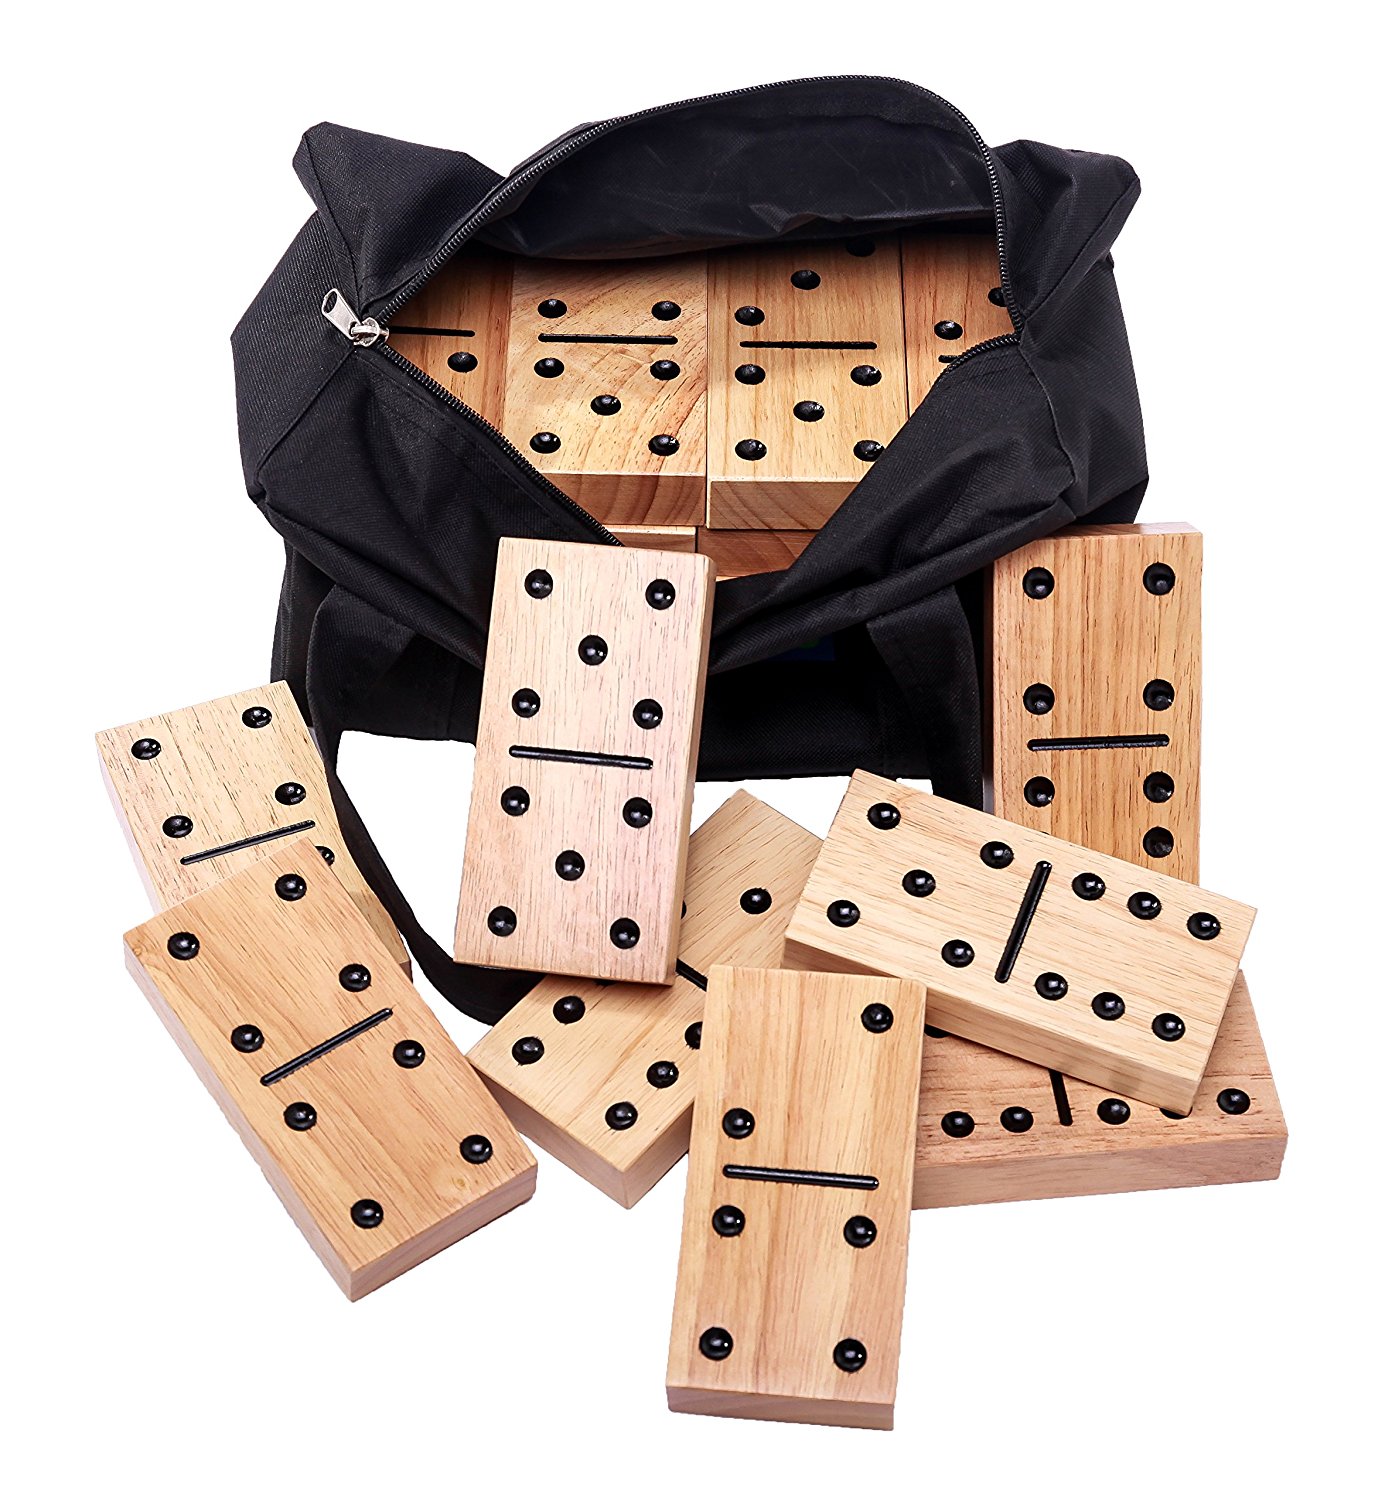 wooden outdoor dominoes game